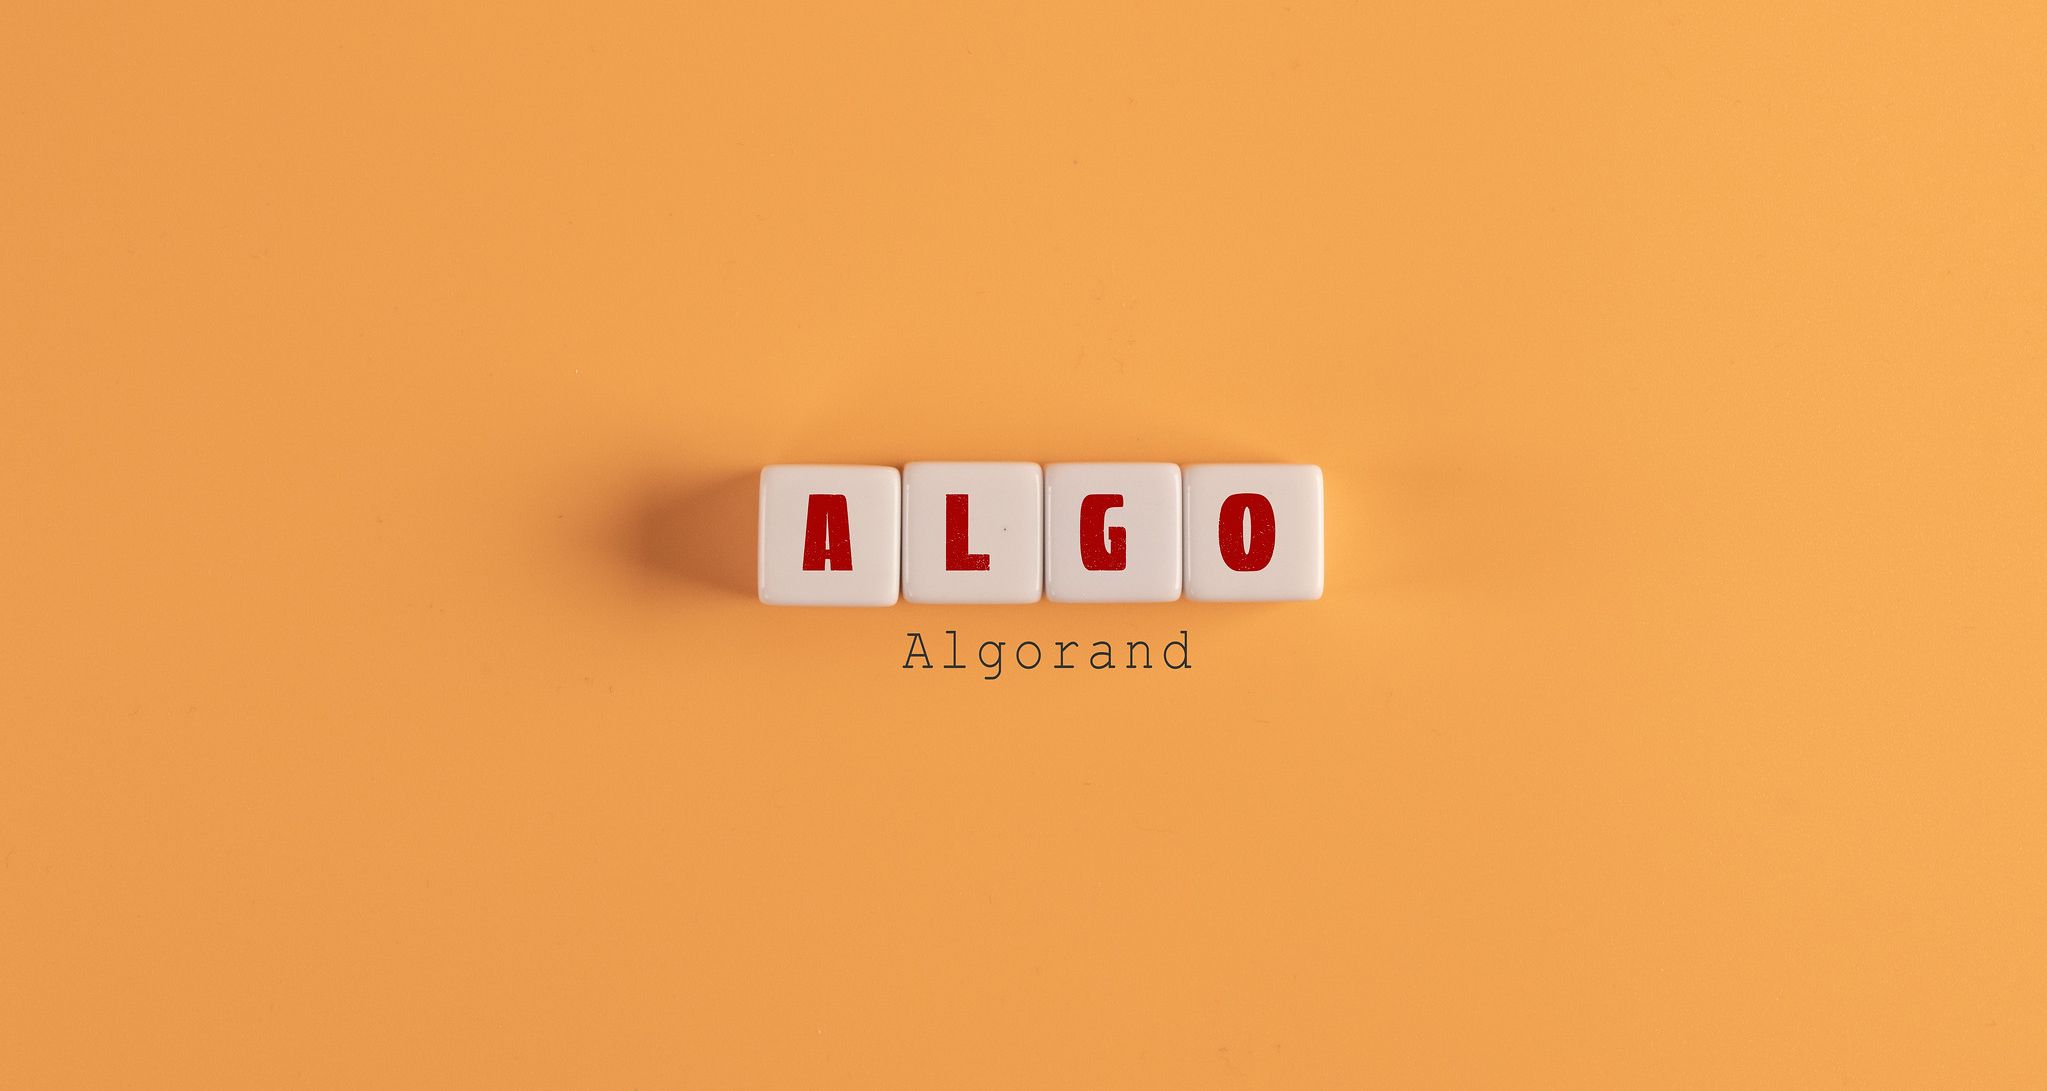 Algo written in Scrabble letters on an orange background